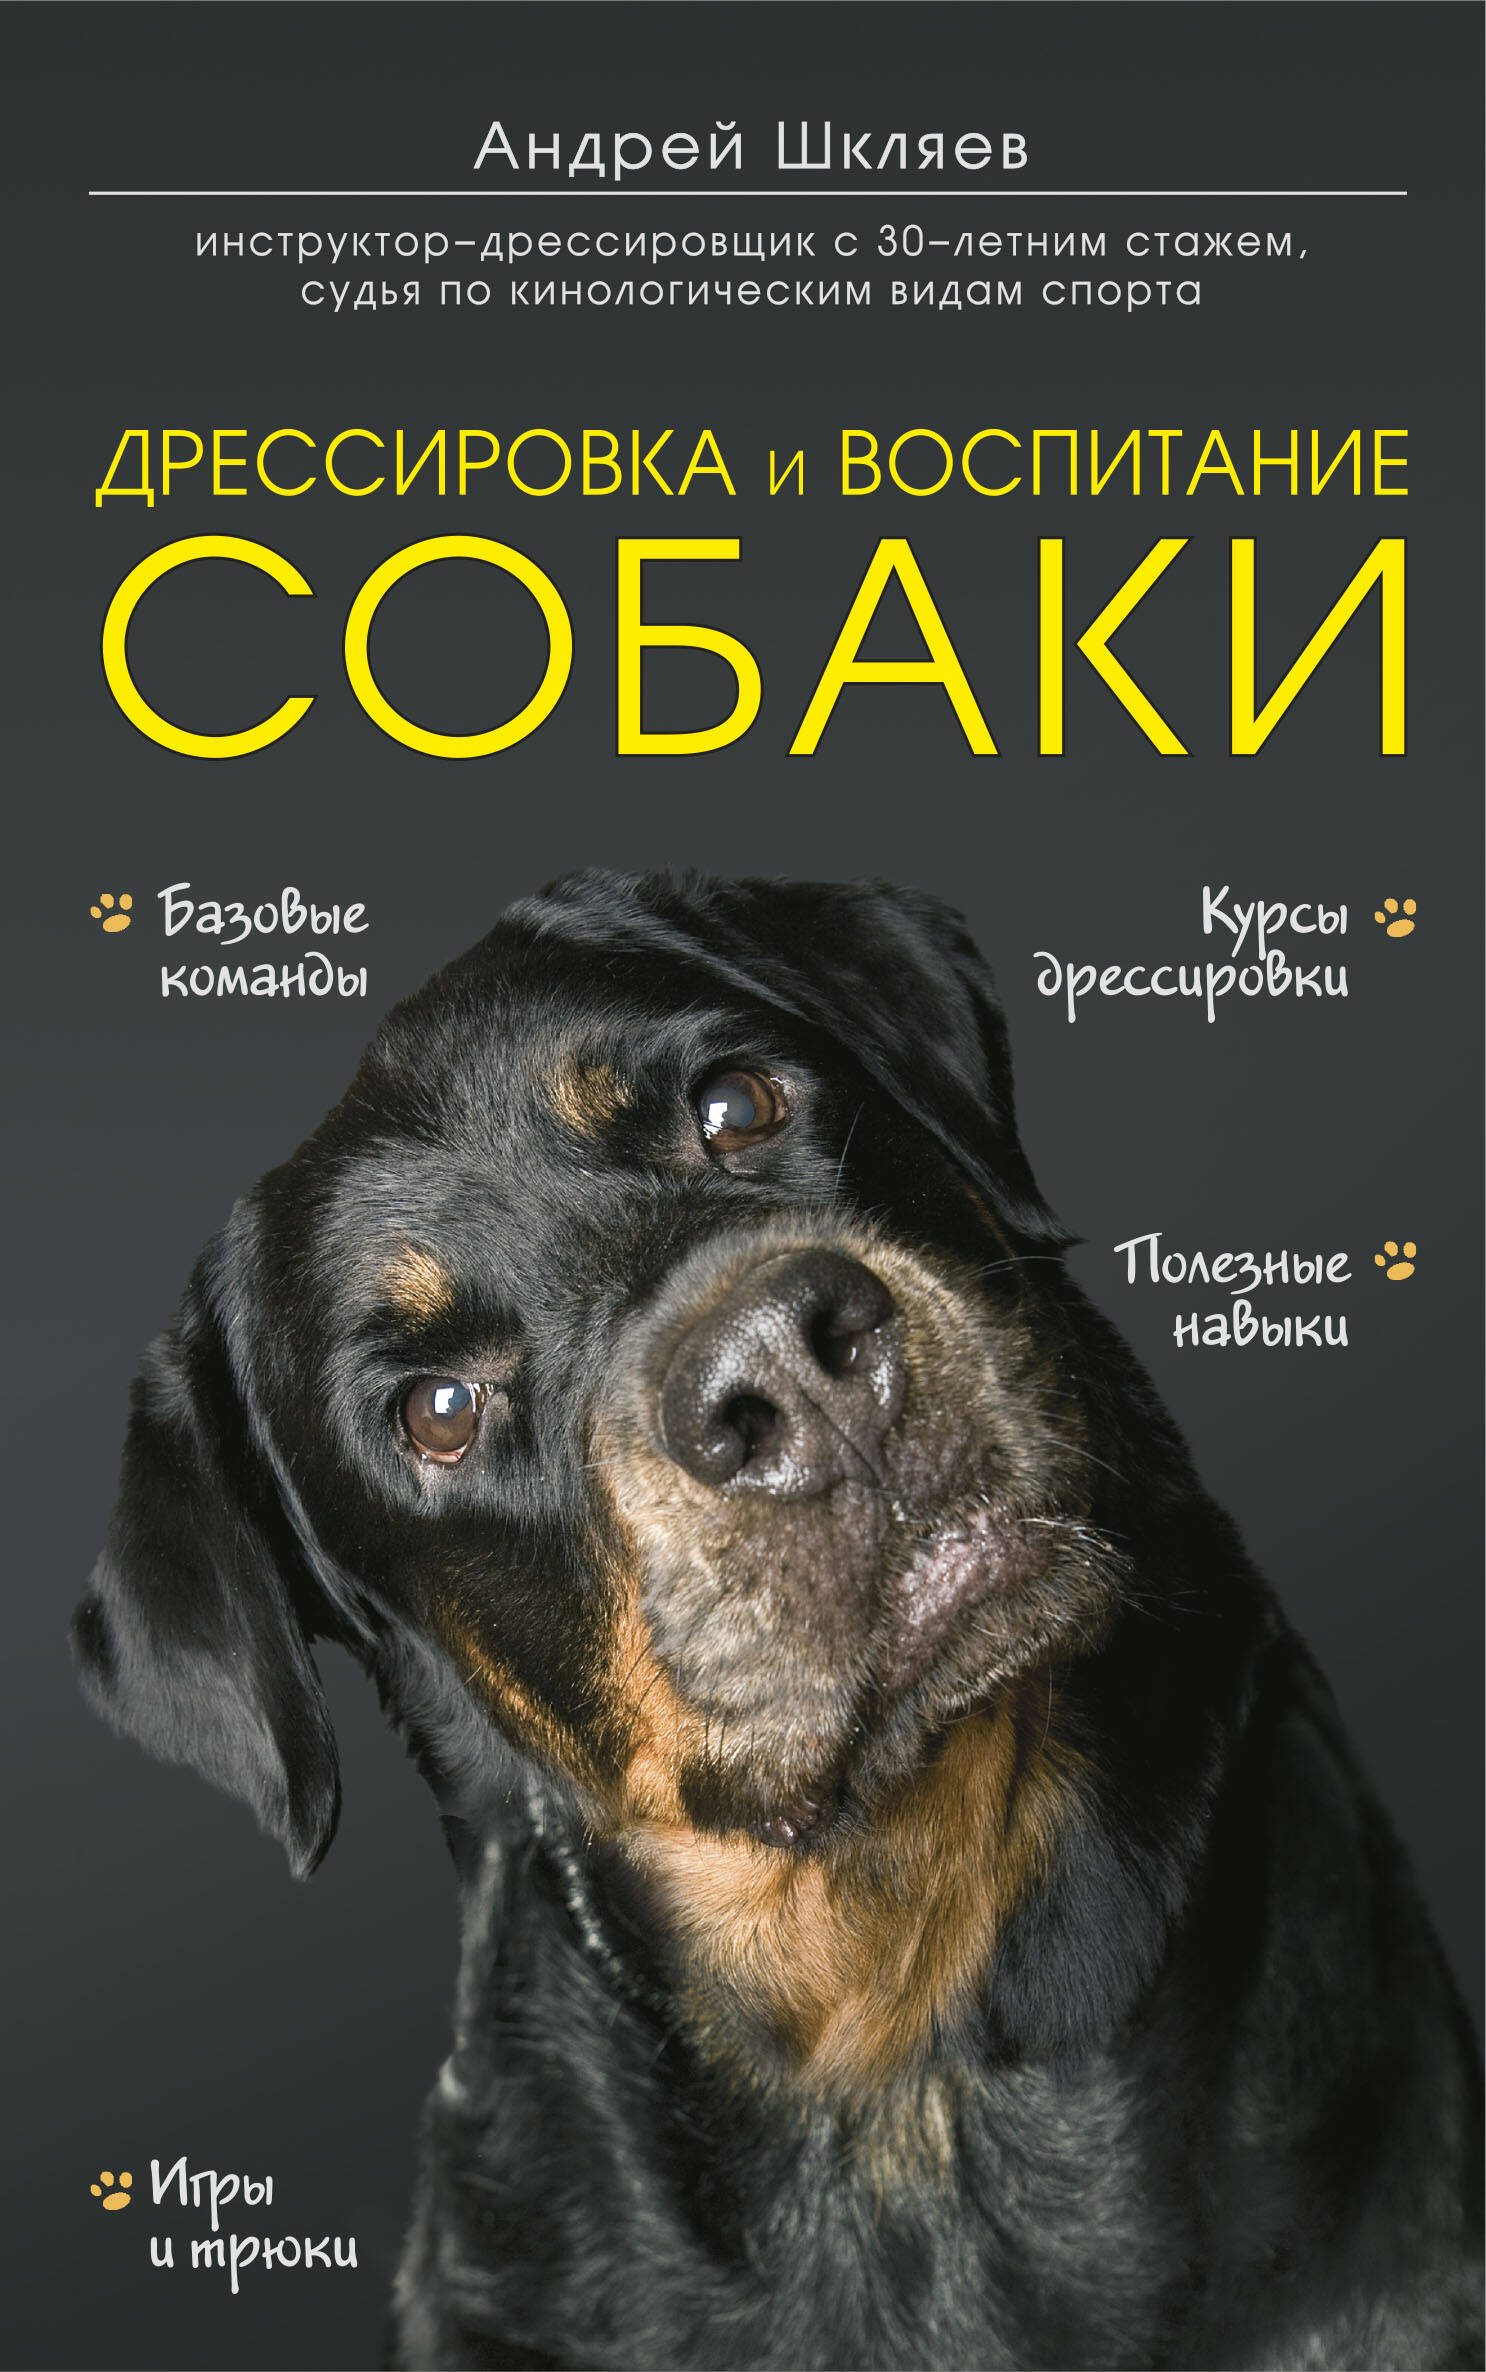 Шкляев Андрей Николаевич - Дрессировка и воспитание собаки